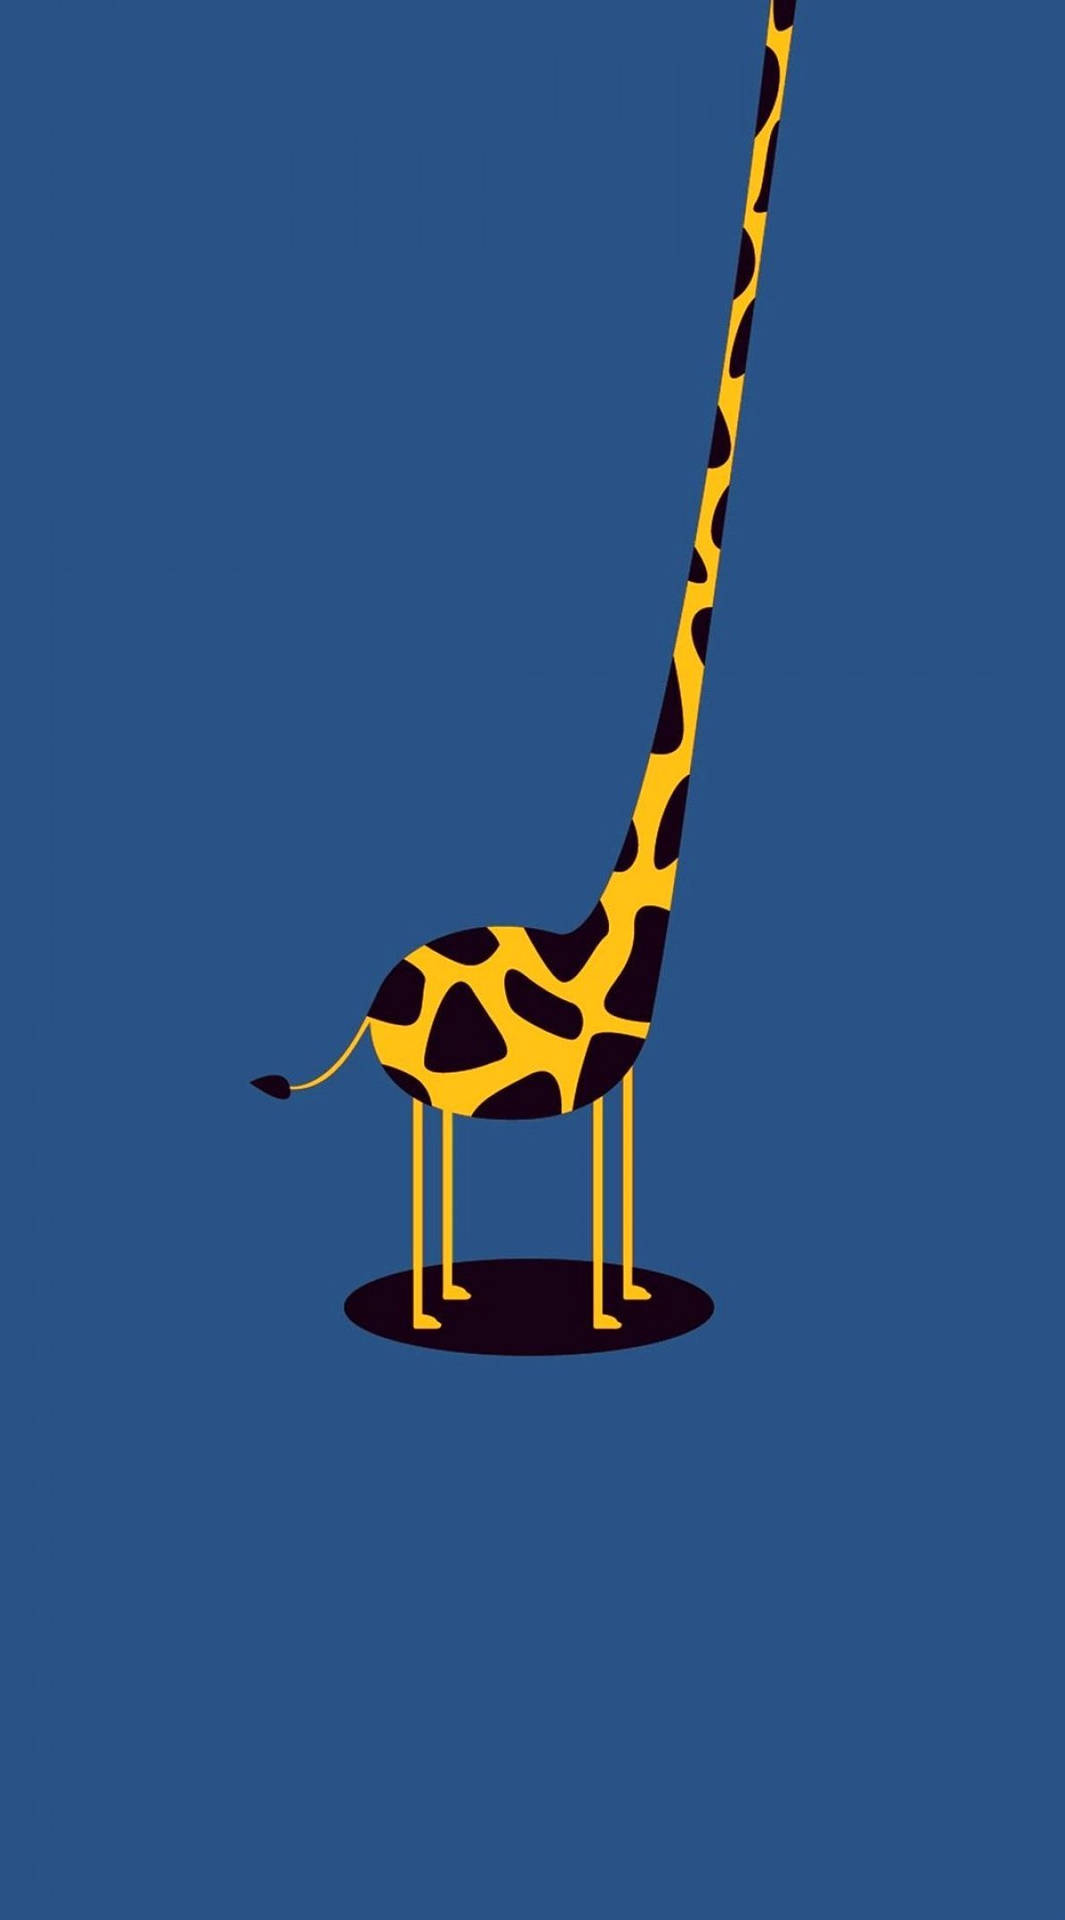 Funny Cartoon Giraffe